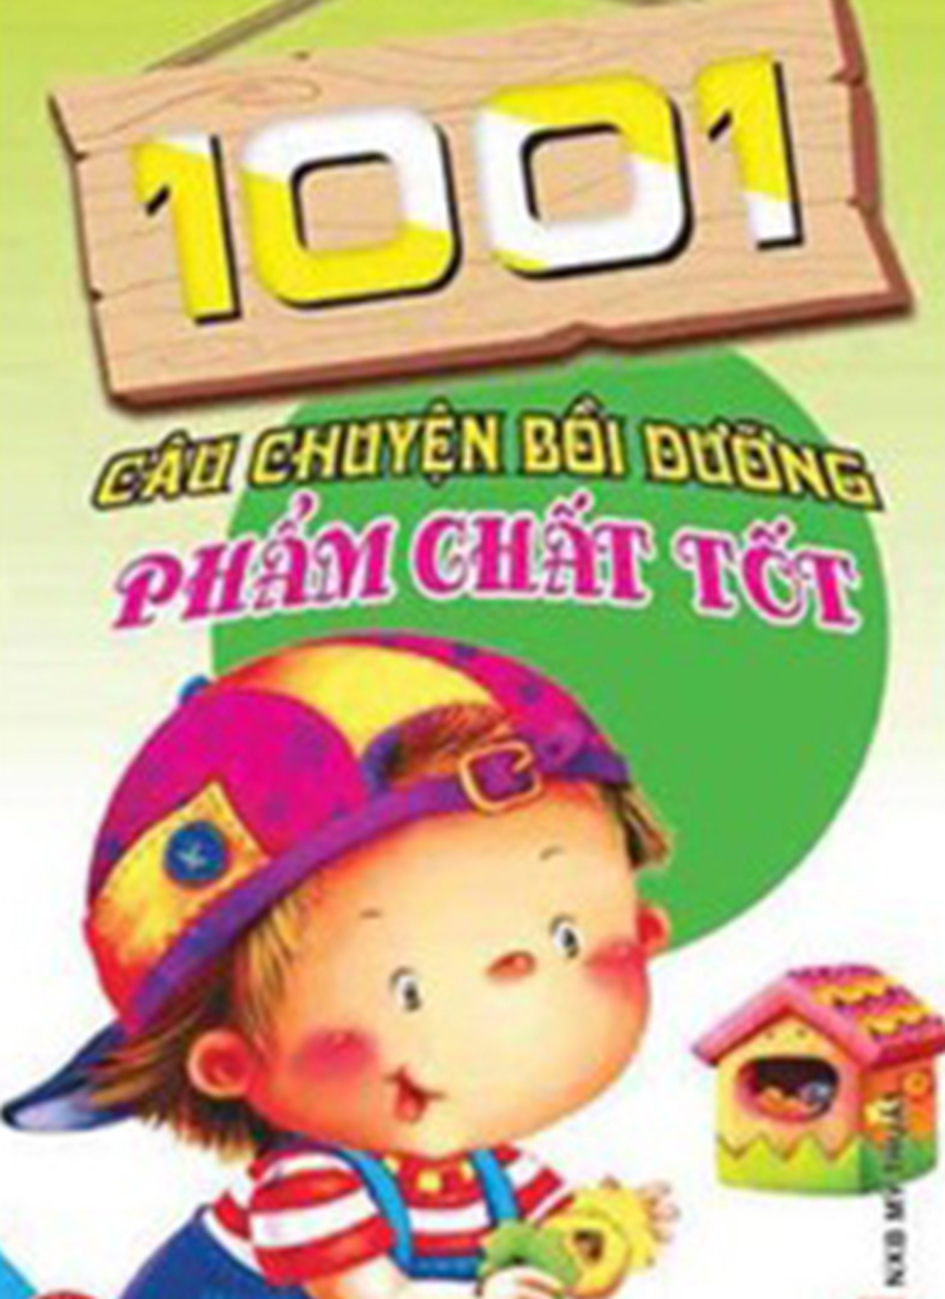 1001 cau chuyen boi duong pham chat tot